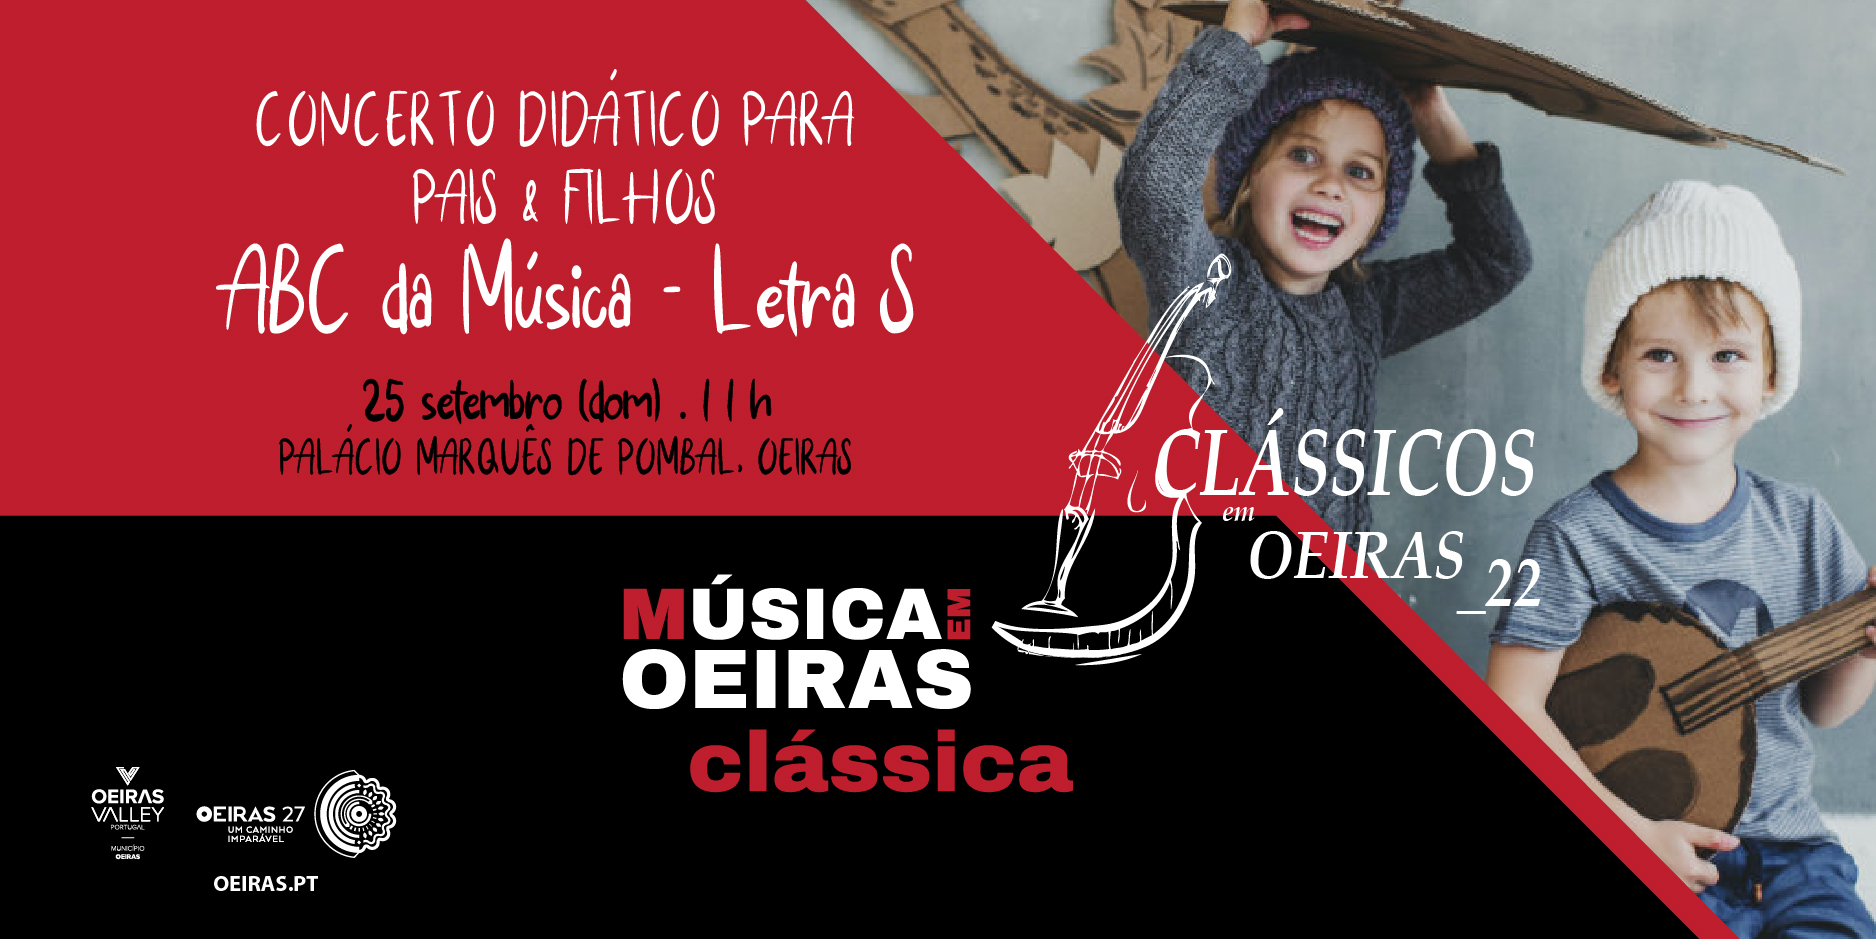 Concerto Didático para Pais & Filhos: ABC da Música - Letra S